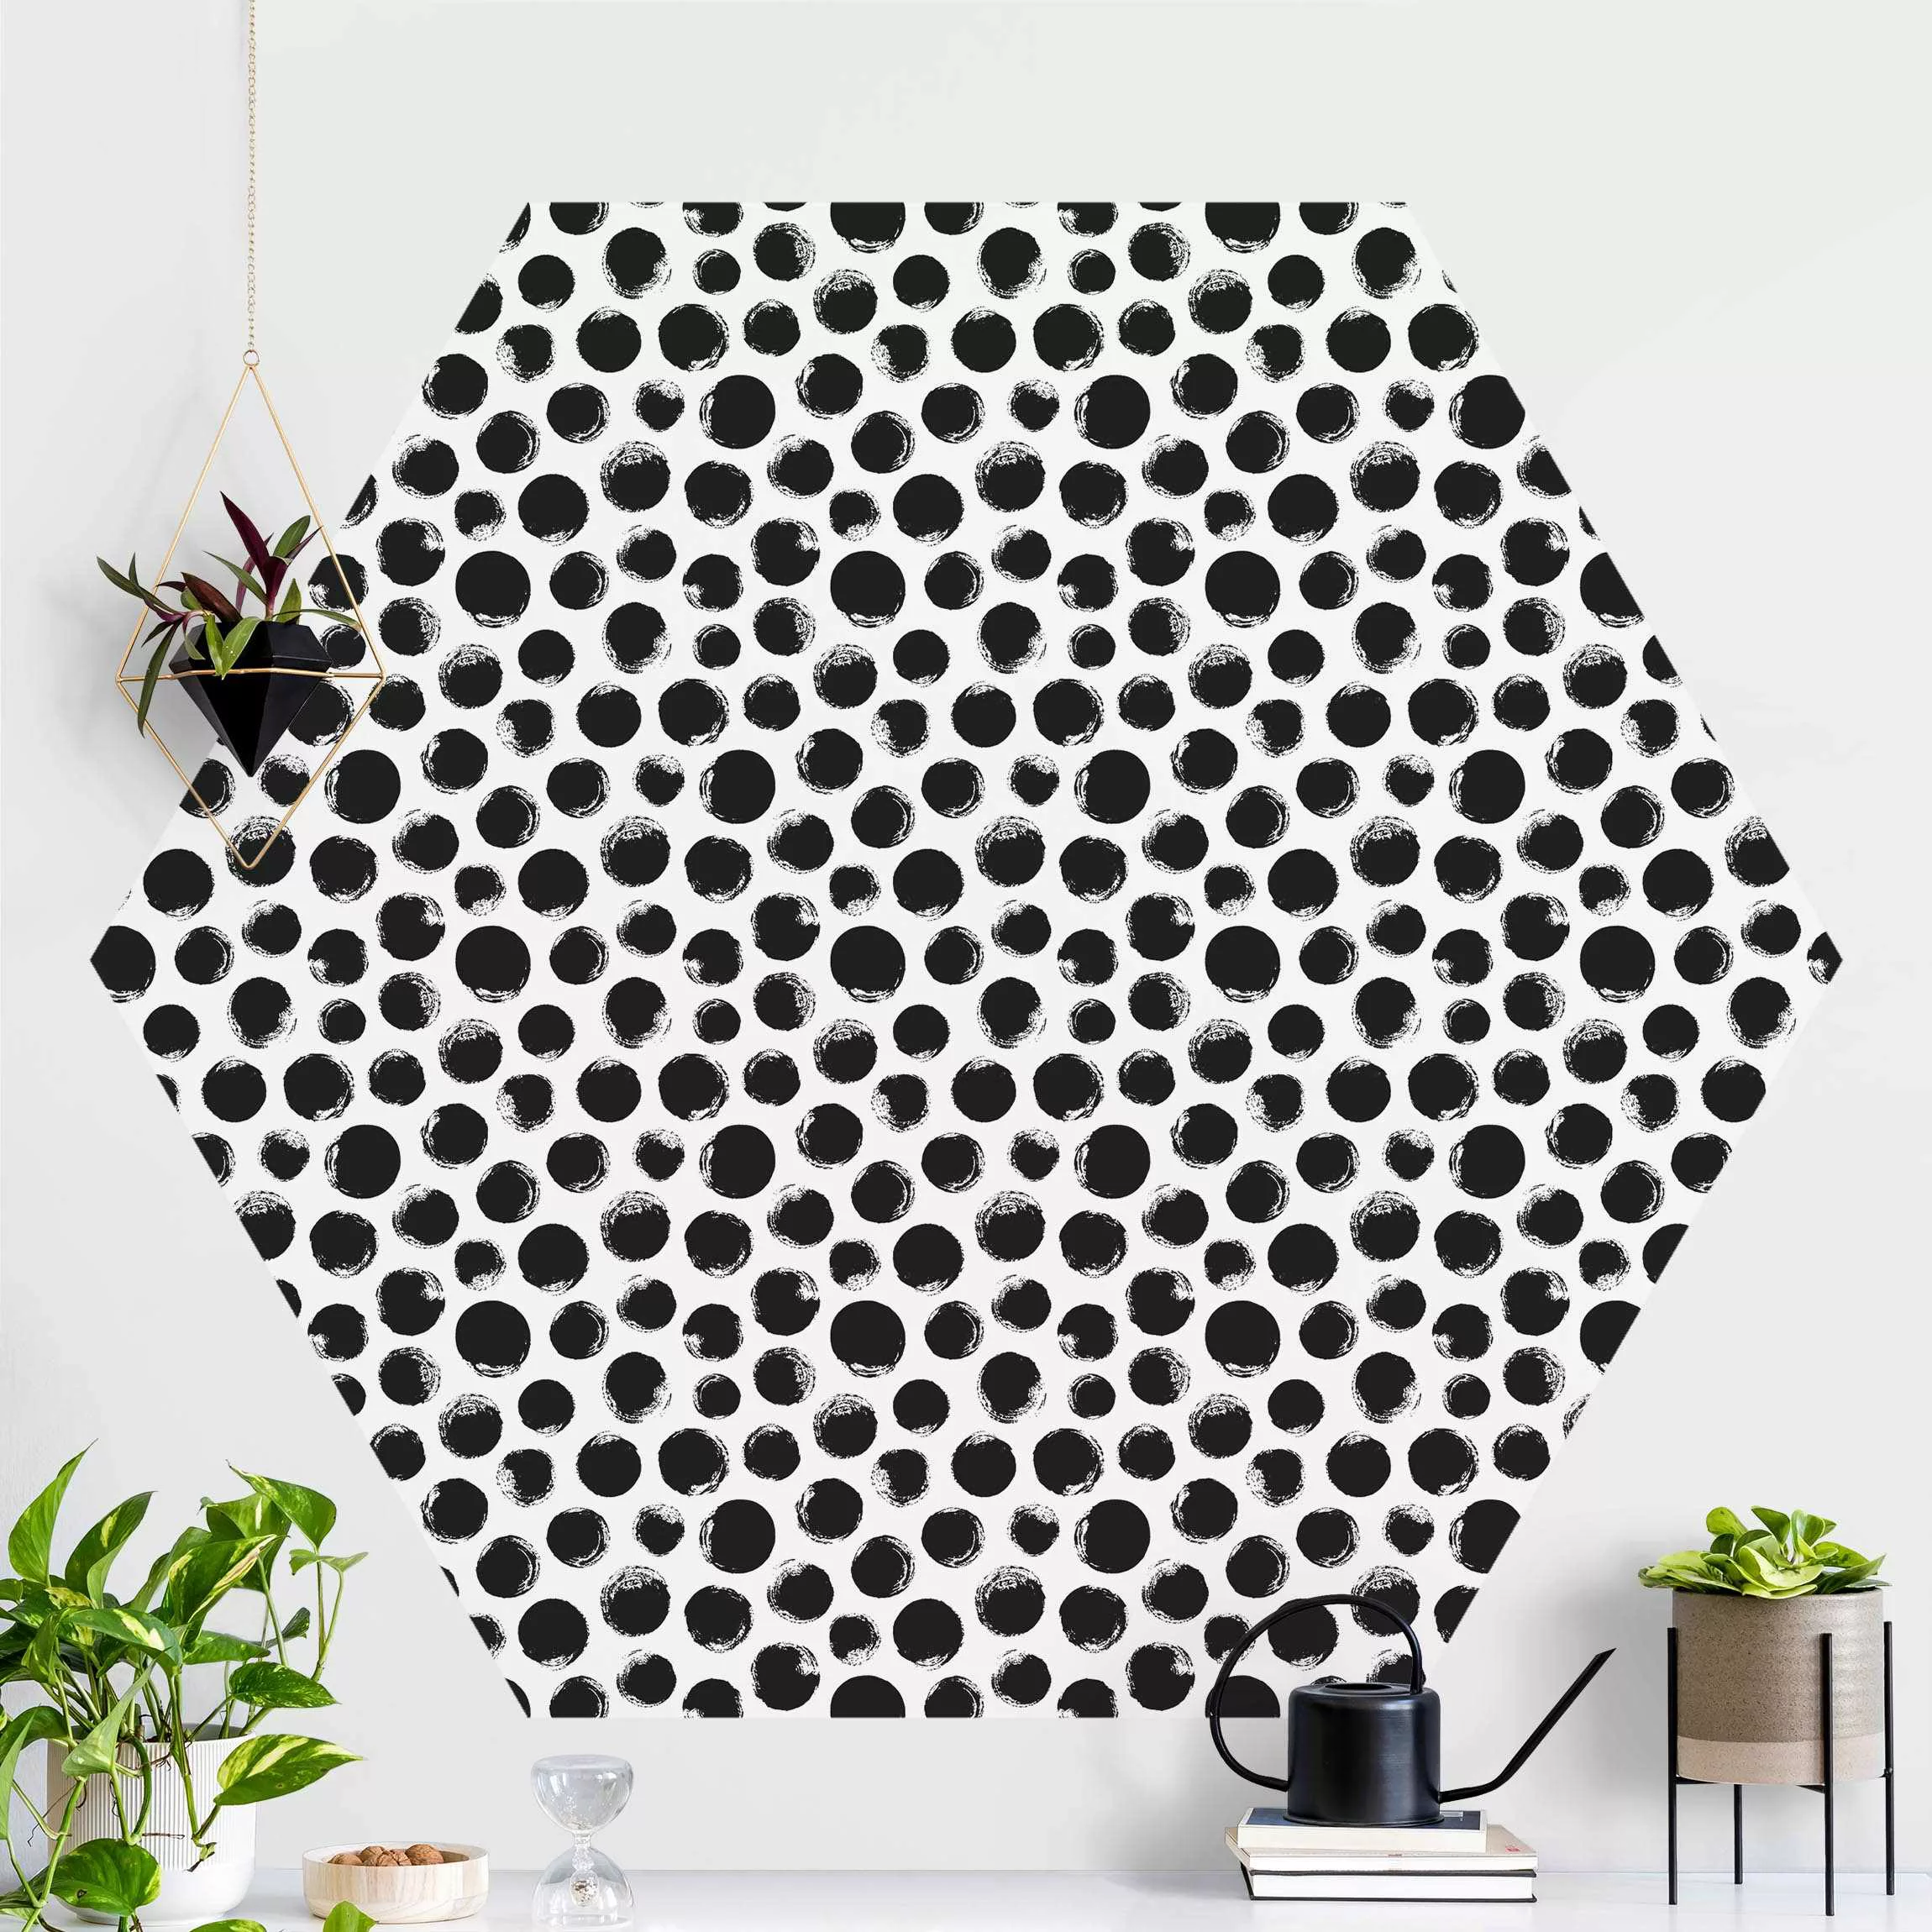 Hexagon Mustertapete selbstklebend Schwarze Tusche Polkadots günstig online kaufen